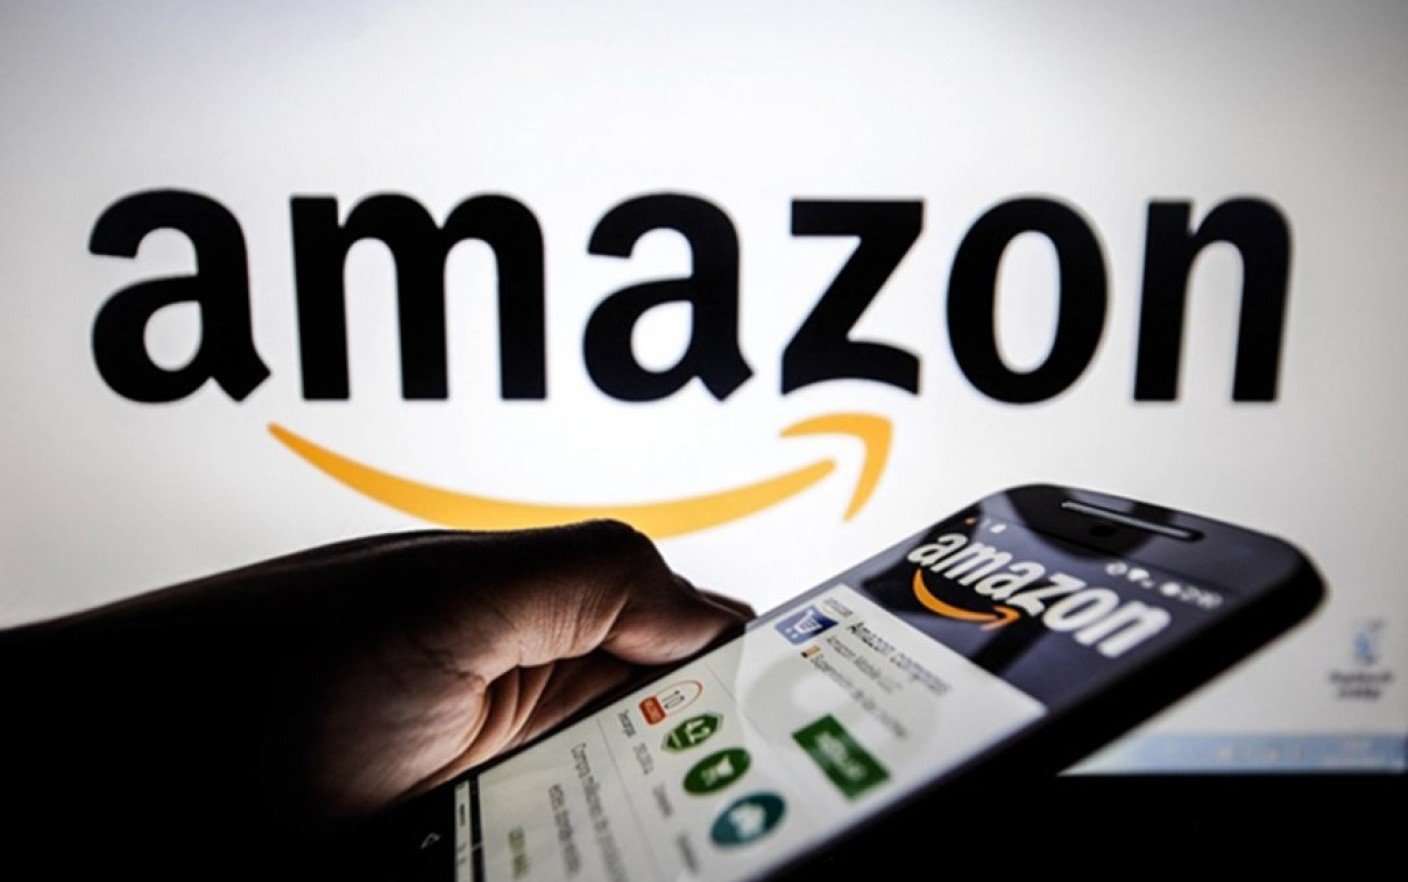  Investigație Financial Times despre manipularea recenziilor pe Amazon